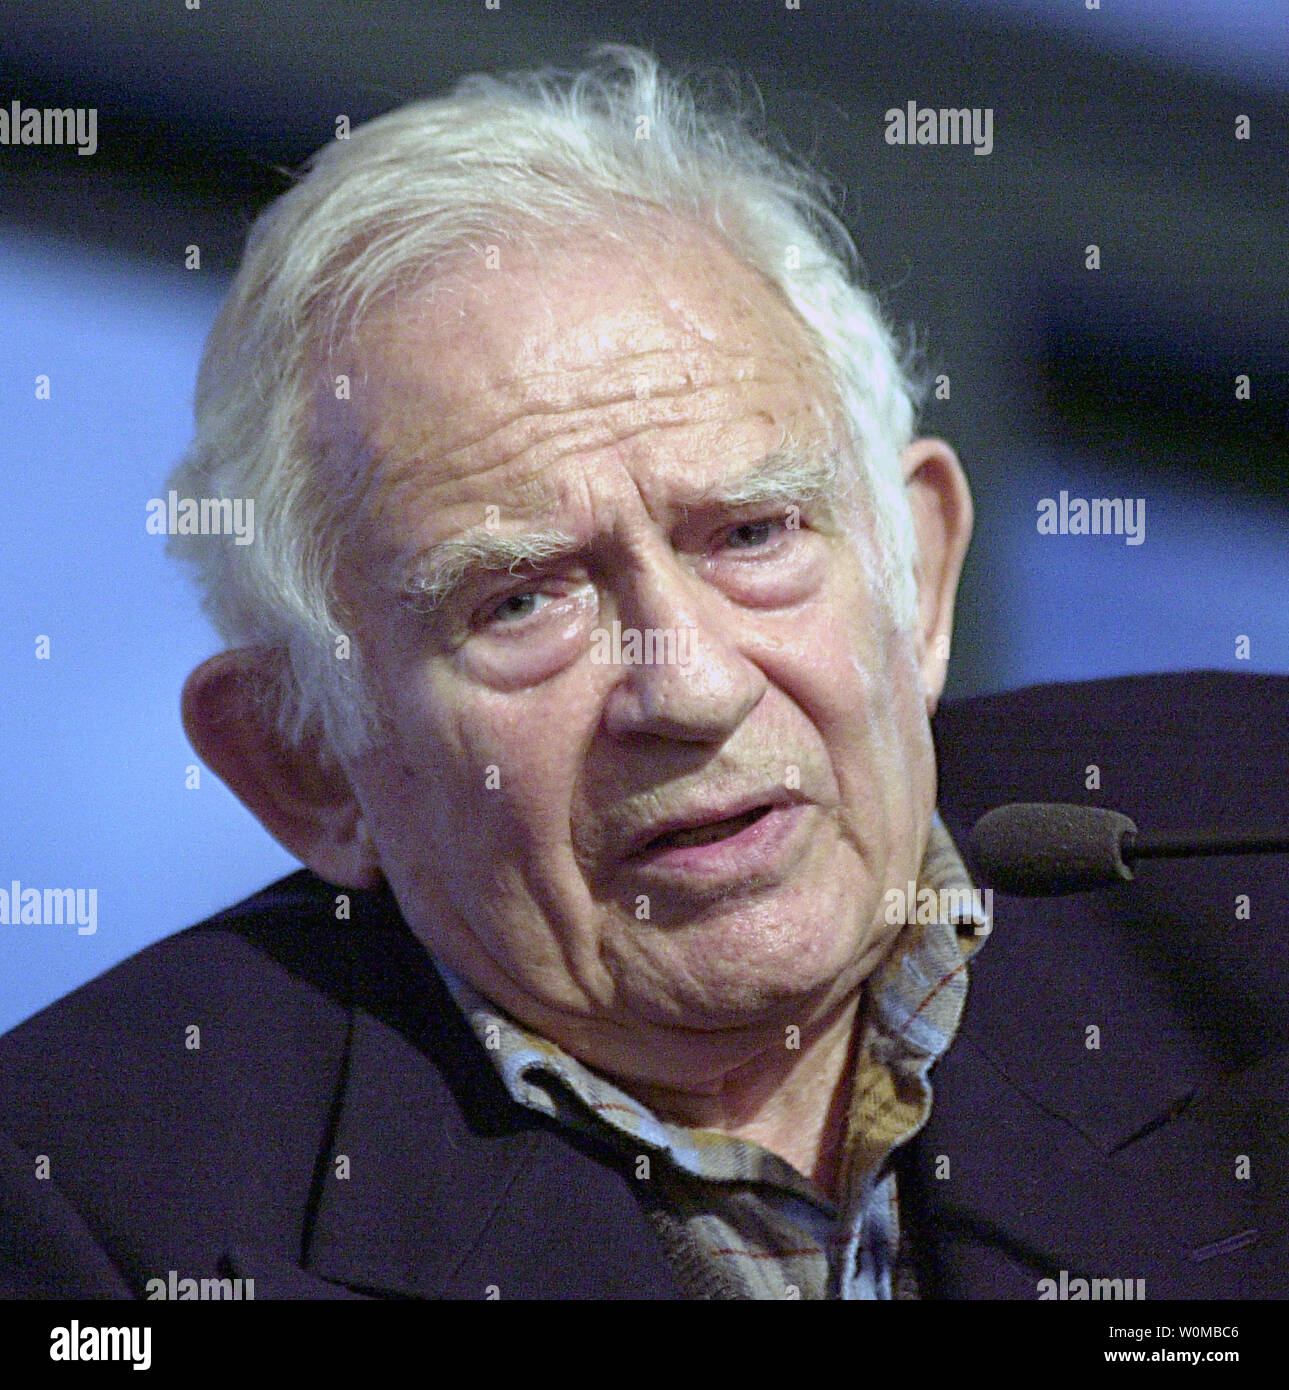 Autor Norman Mailer, mostrado en este 30 de abril de 2002 Foto de archivo  en Nueva York un almacén de libros de Barnes and Noble, ha muerto a los 84  años de